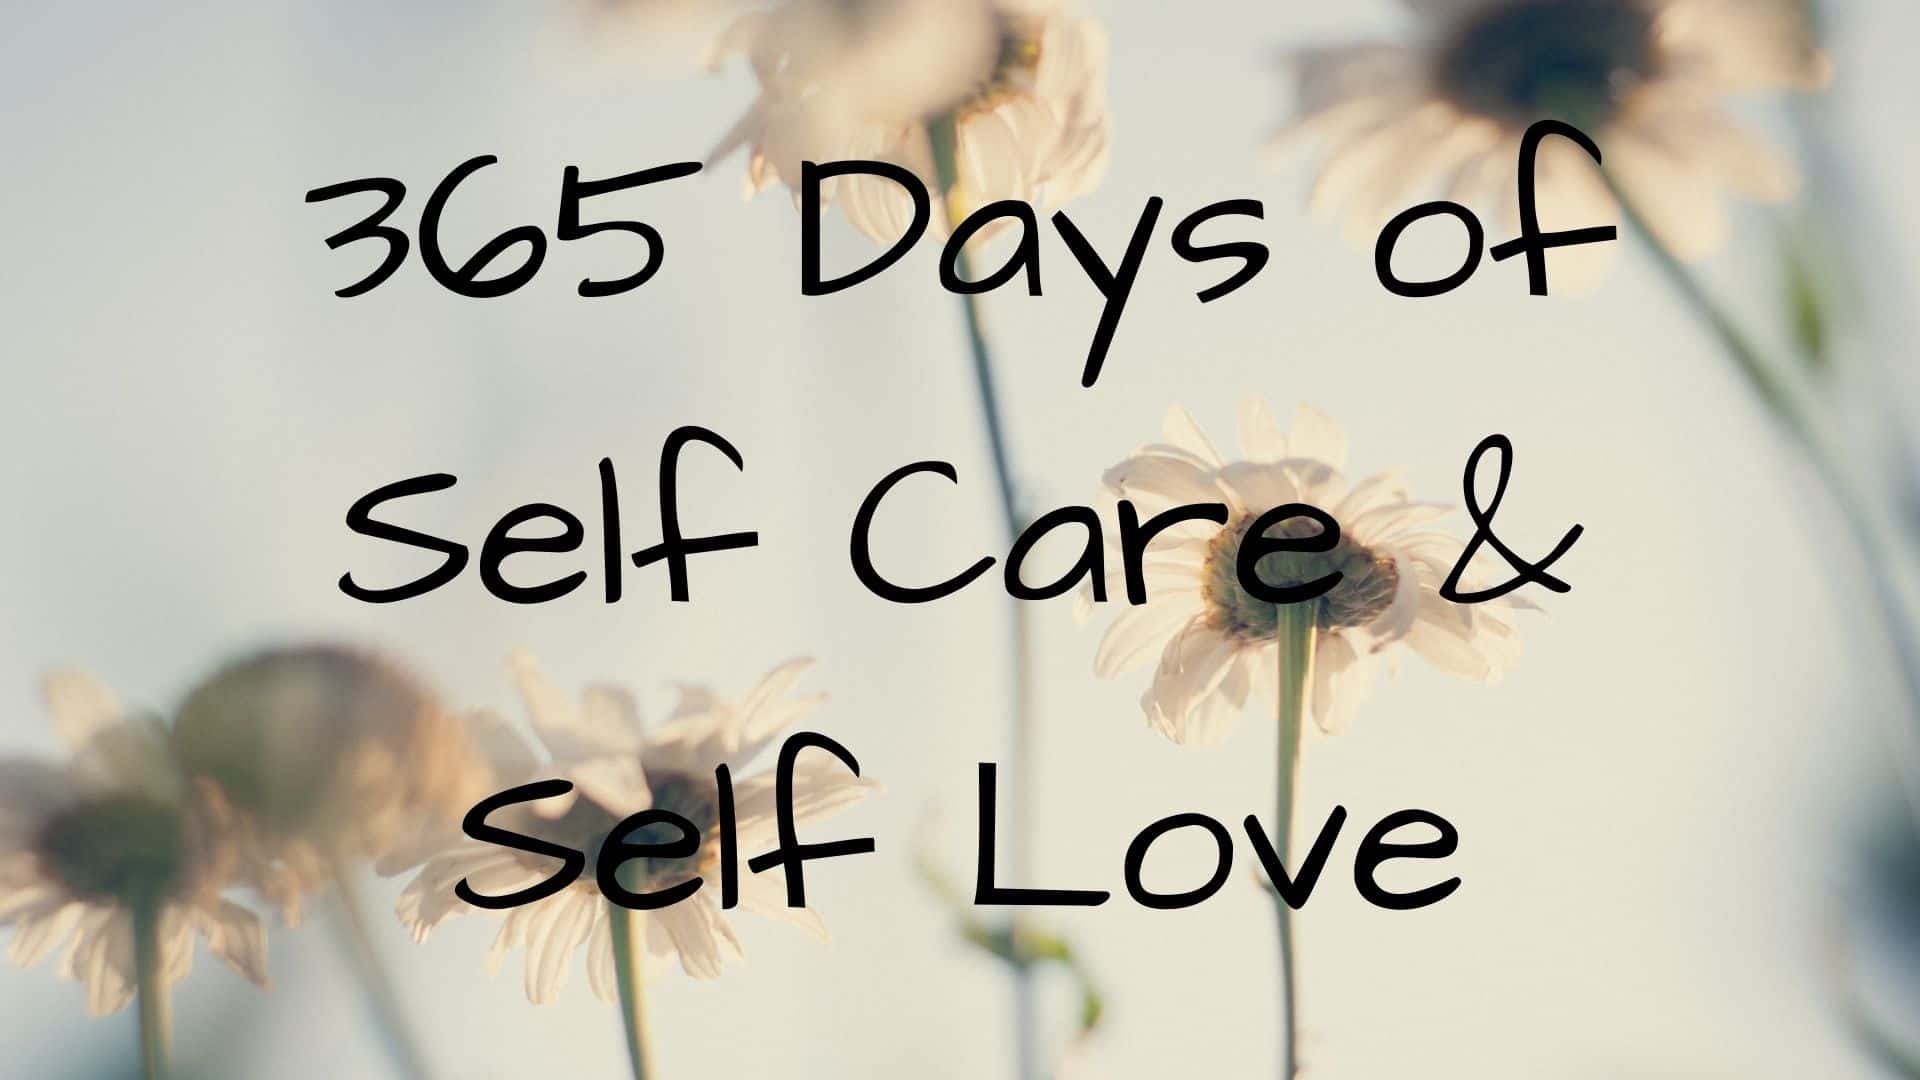 365 Days of Self Care & Self Love